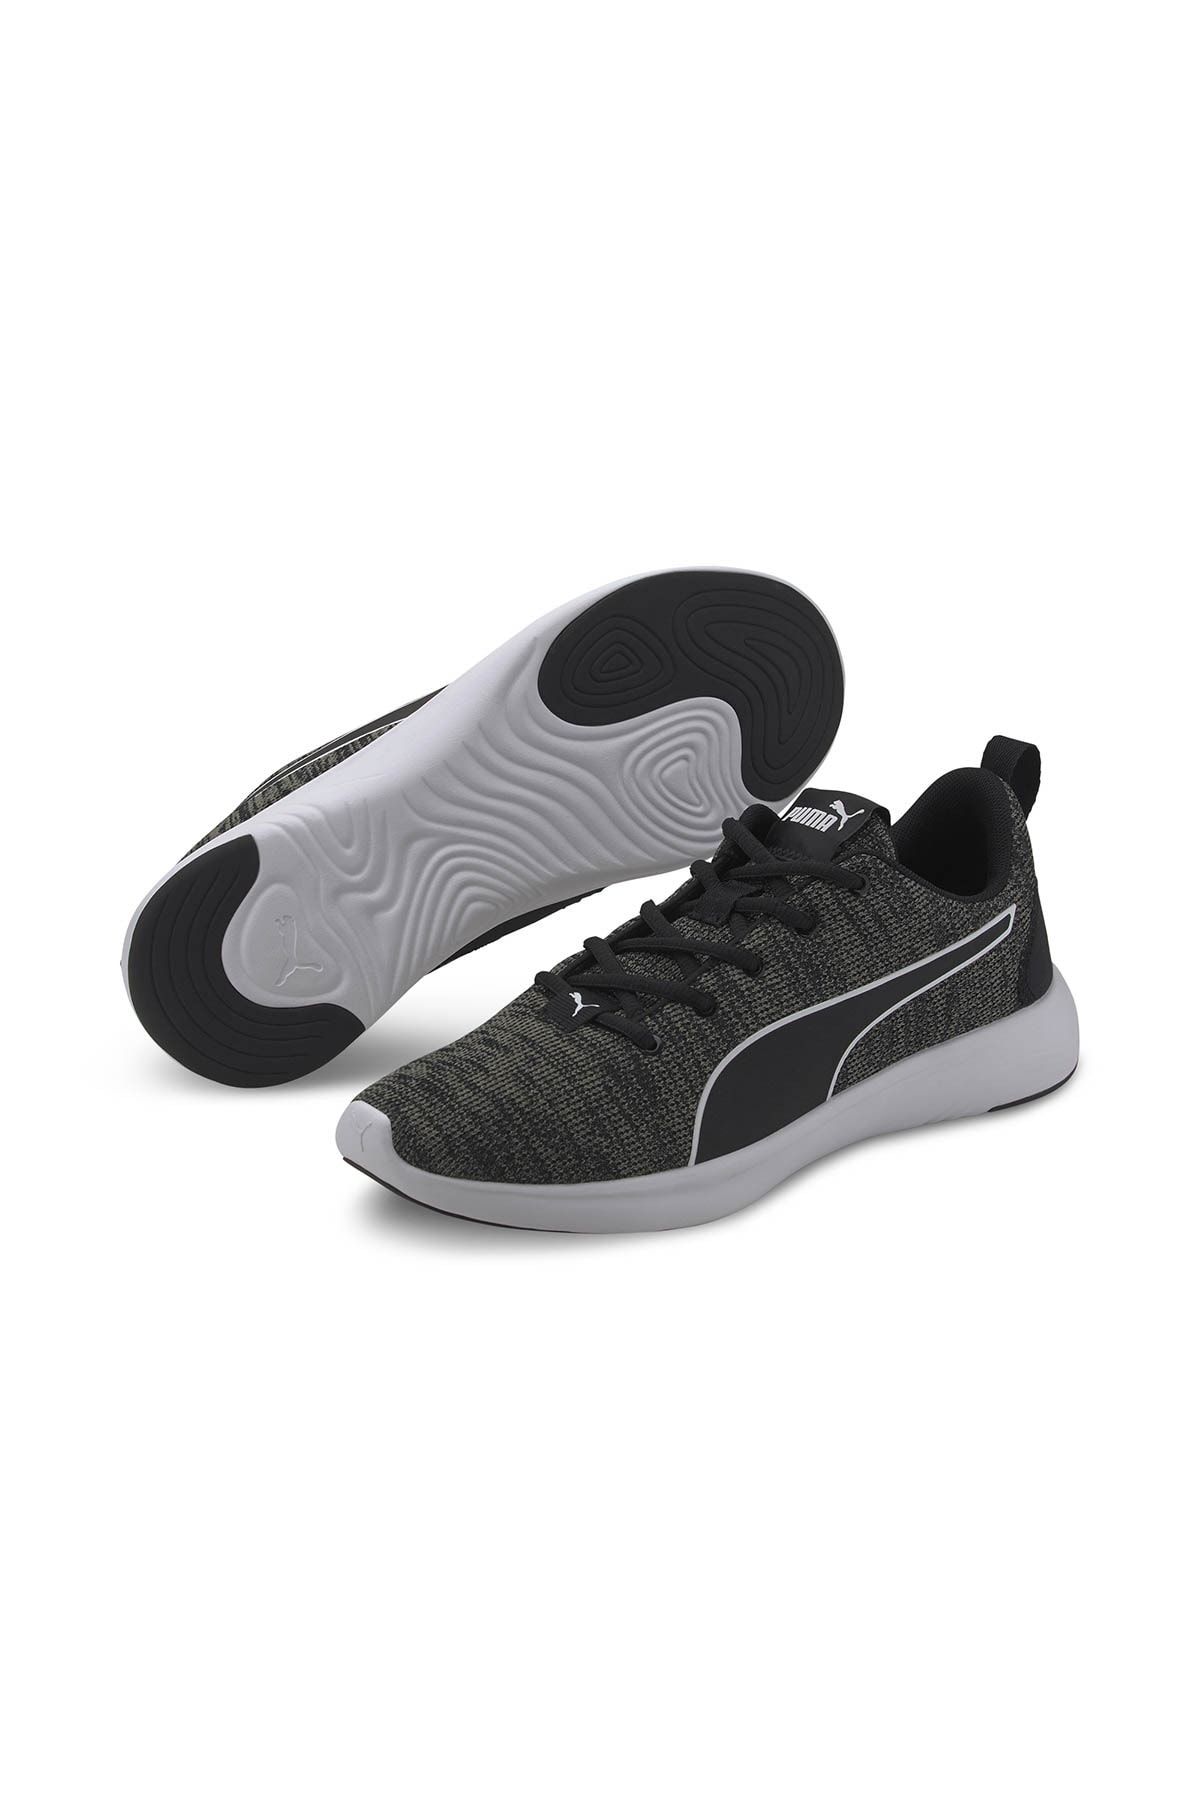 Puma SOFTRIDE VITAL CLEAN Siyah Erkek Sneaker Ayakkabı 101119181